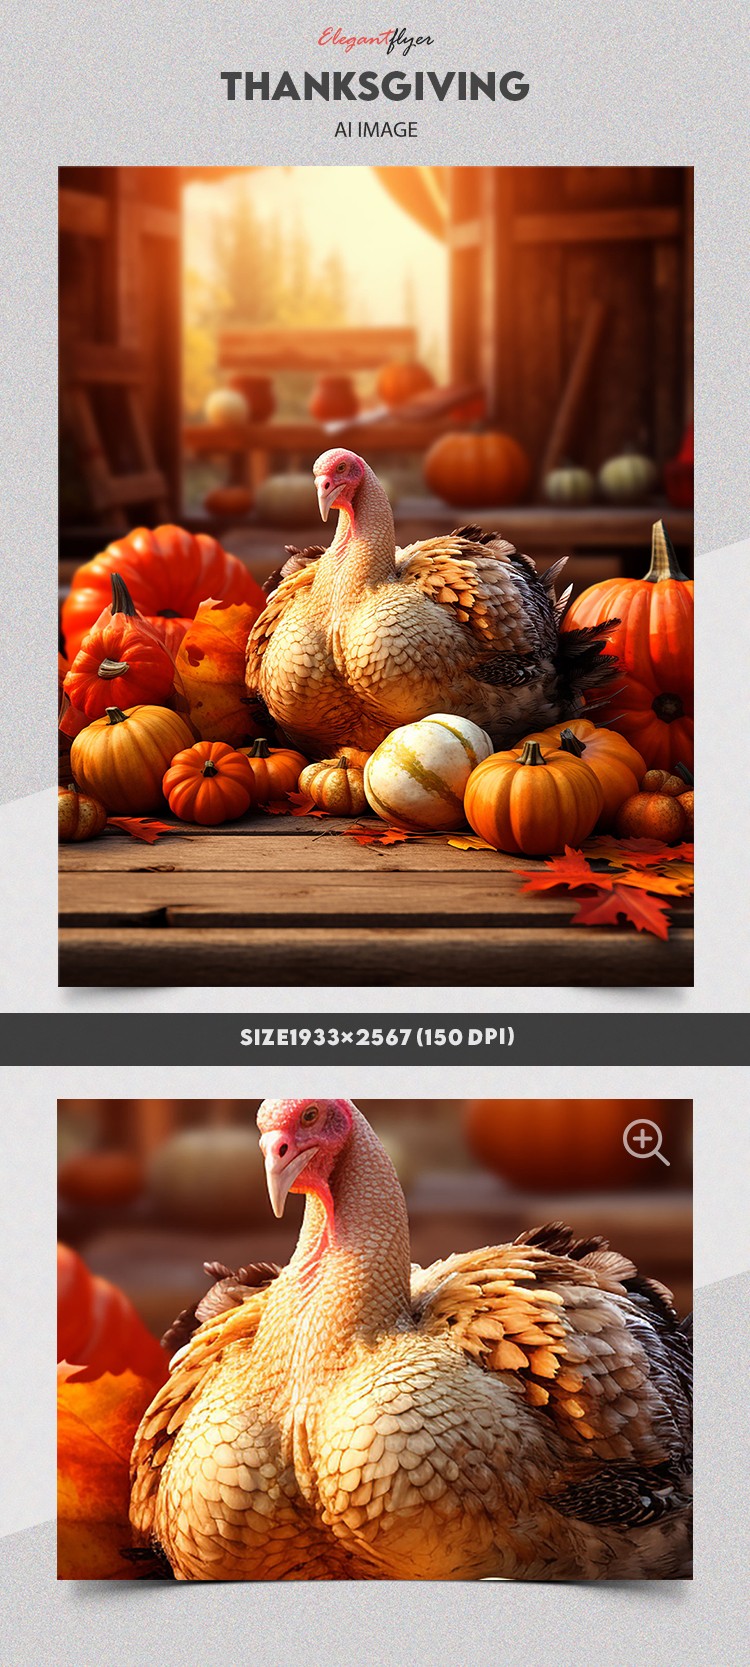 Thanksgiving Turkey with Pumpkins by ElegantFlyer